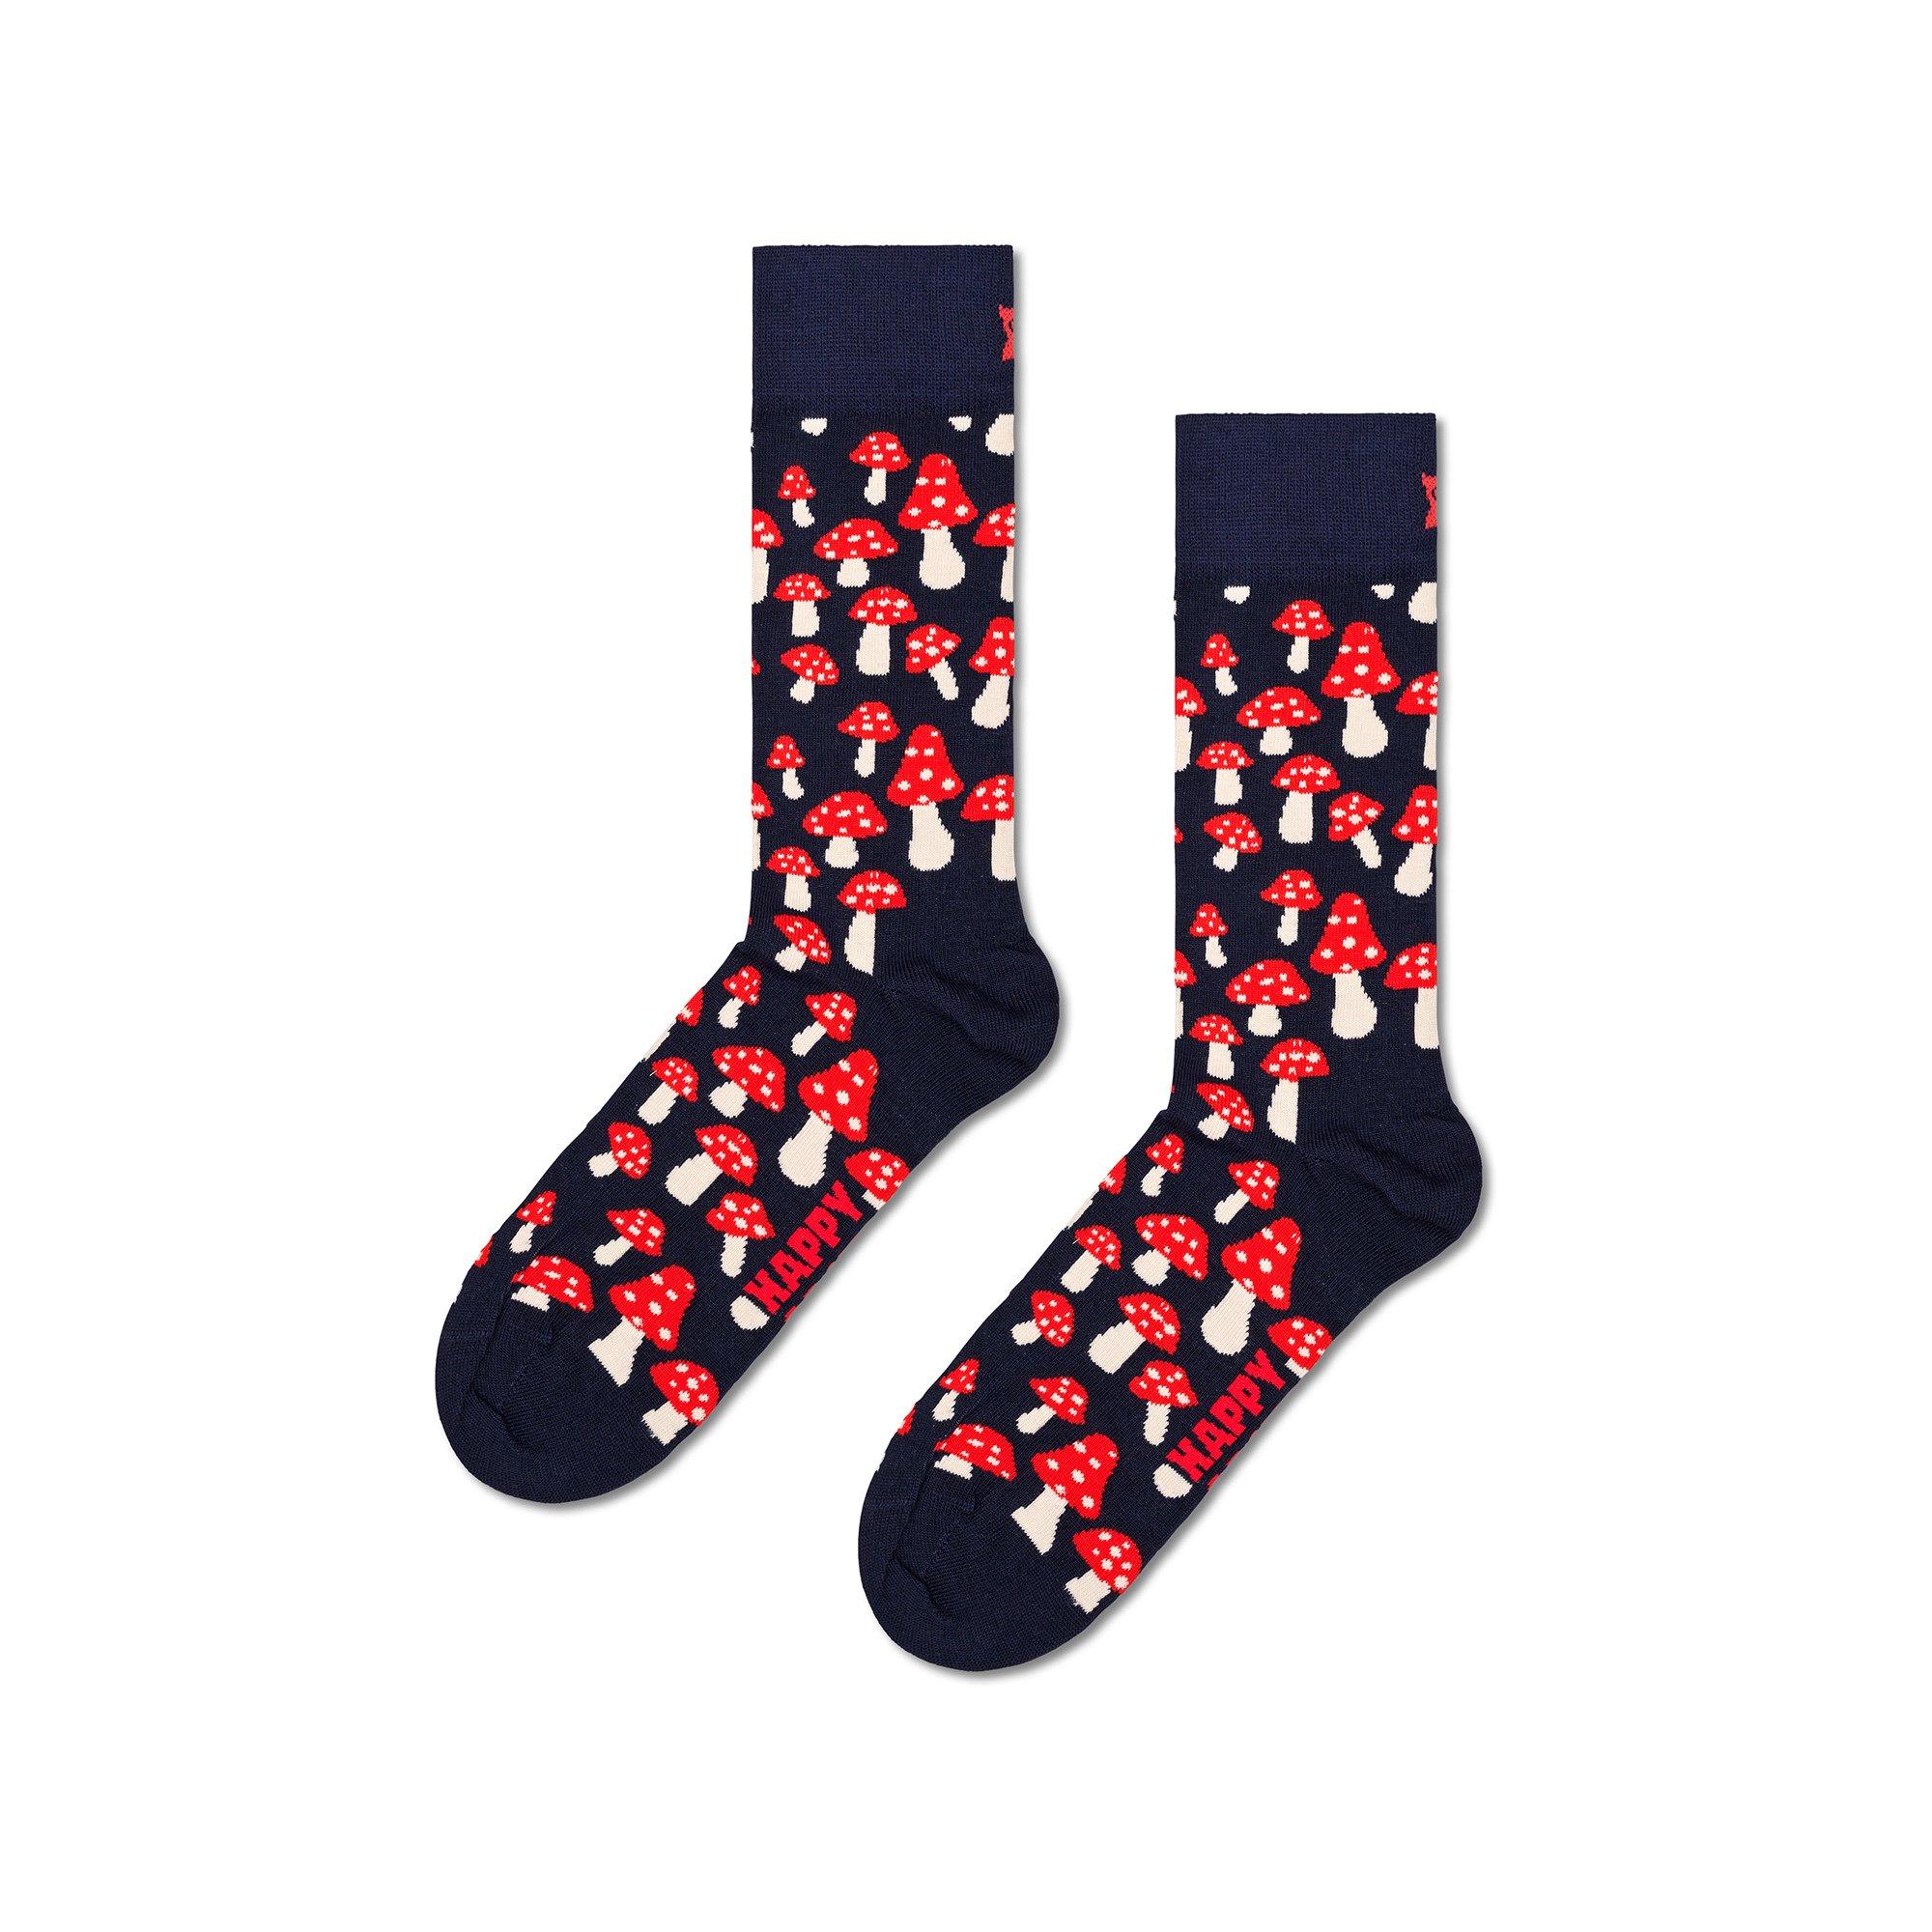 Happy Socks Mushroom Sock Wadenlange Socken 